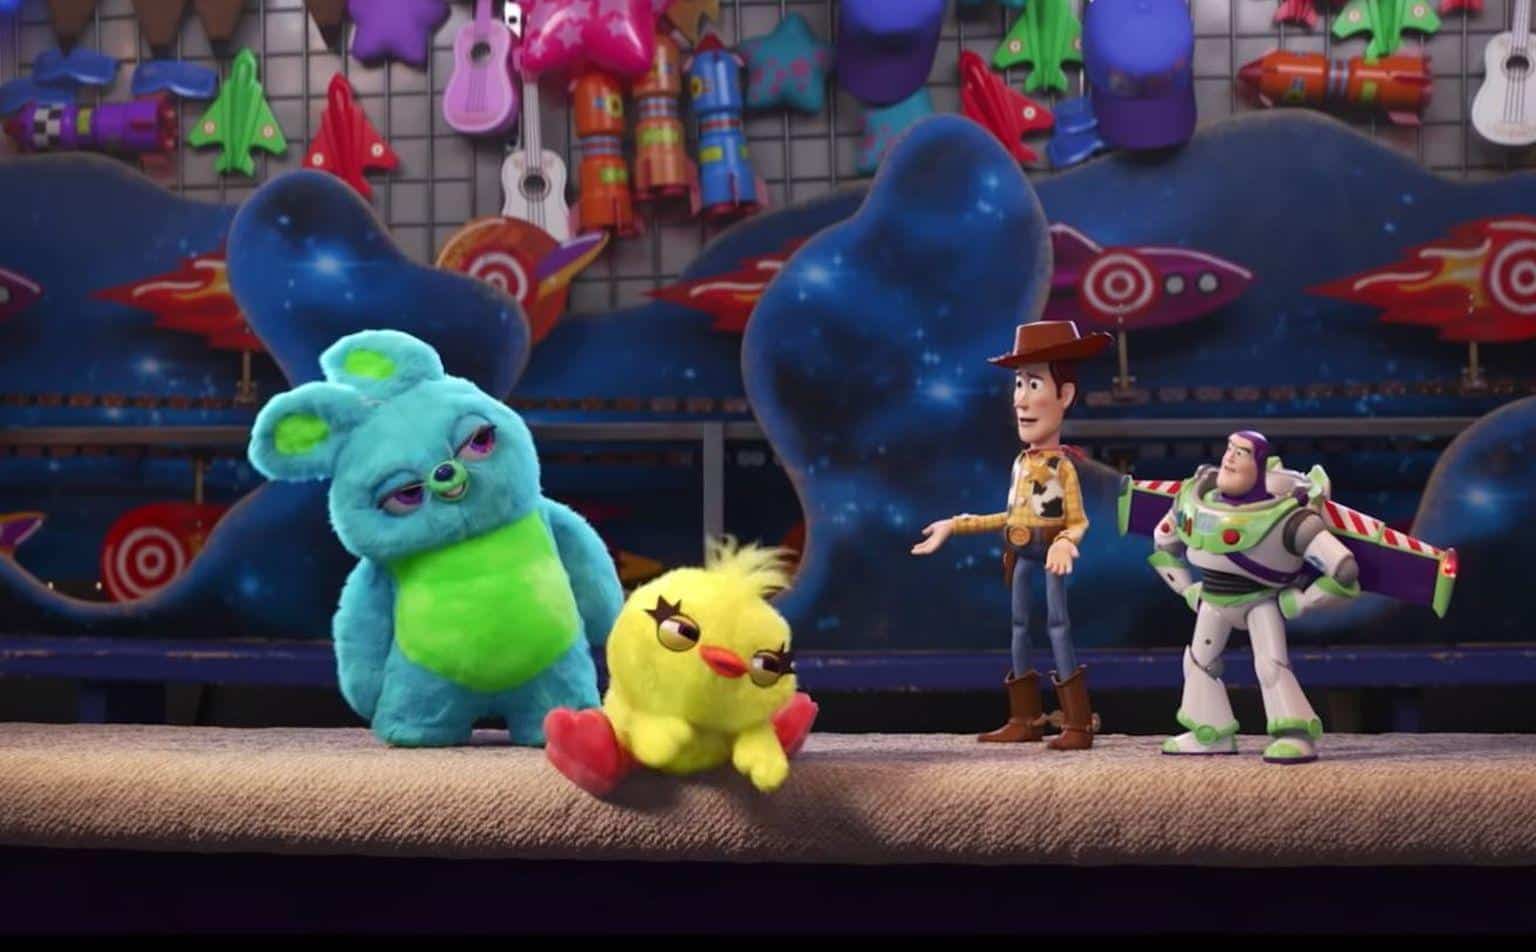 A Toy Story Alles hört auf kein Kommando Kinofilm 2019